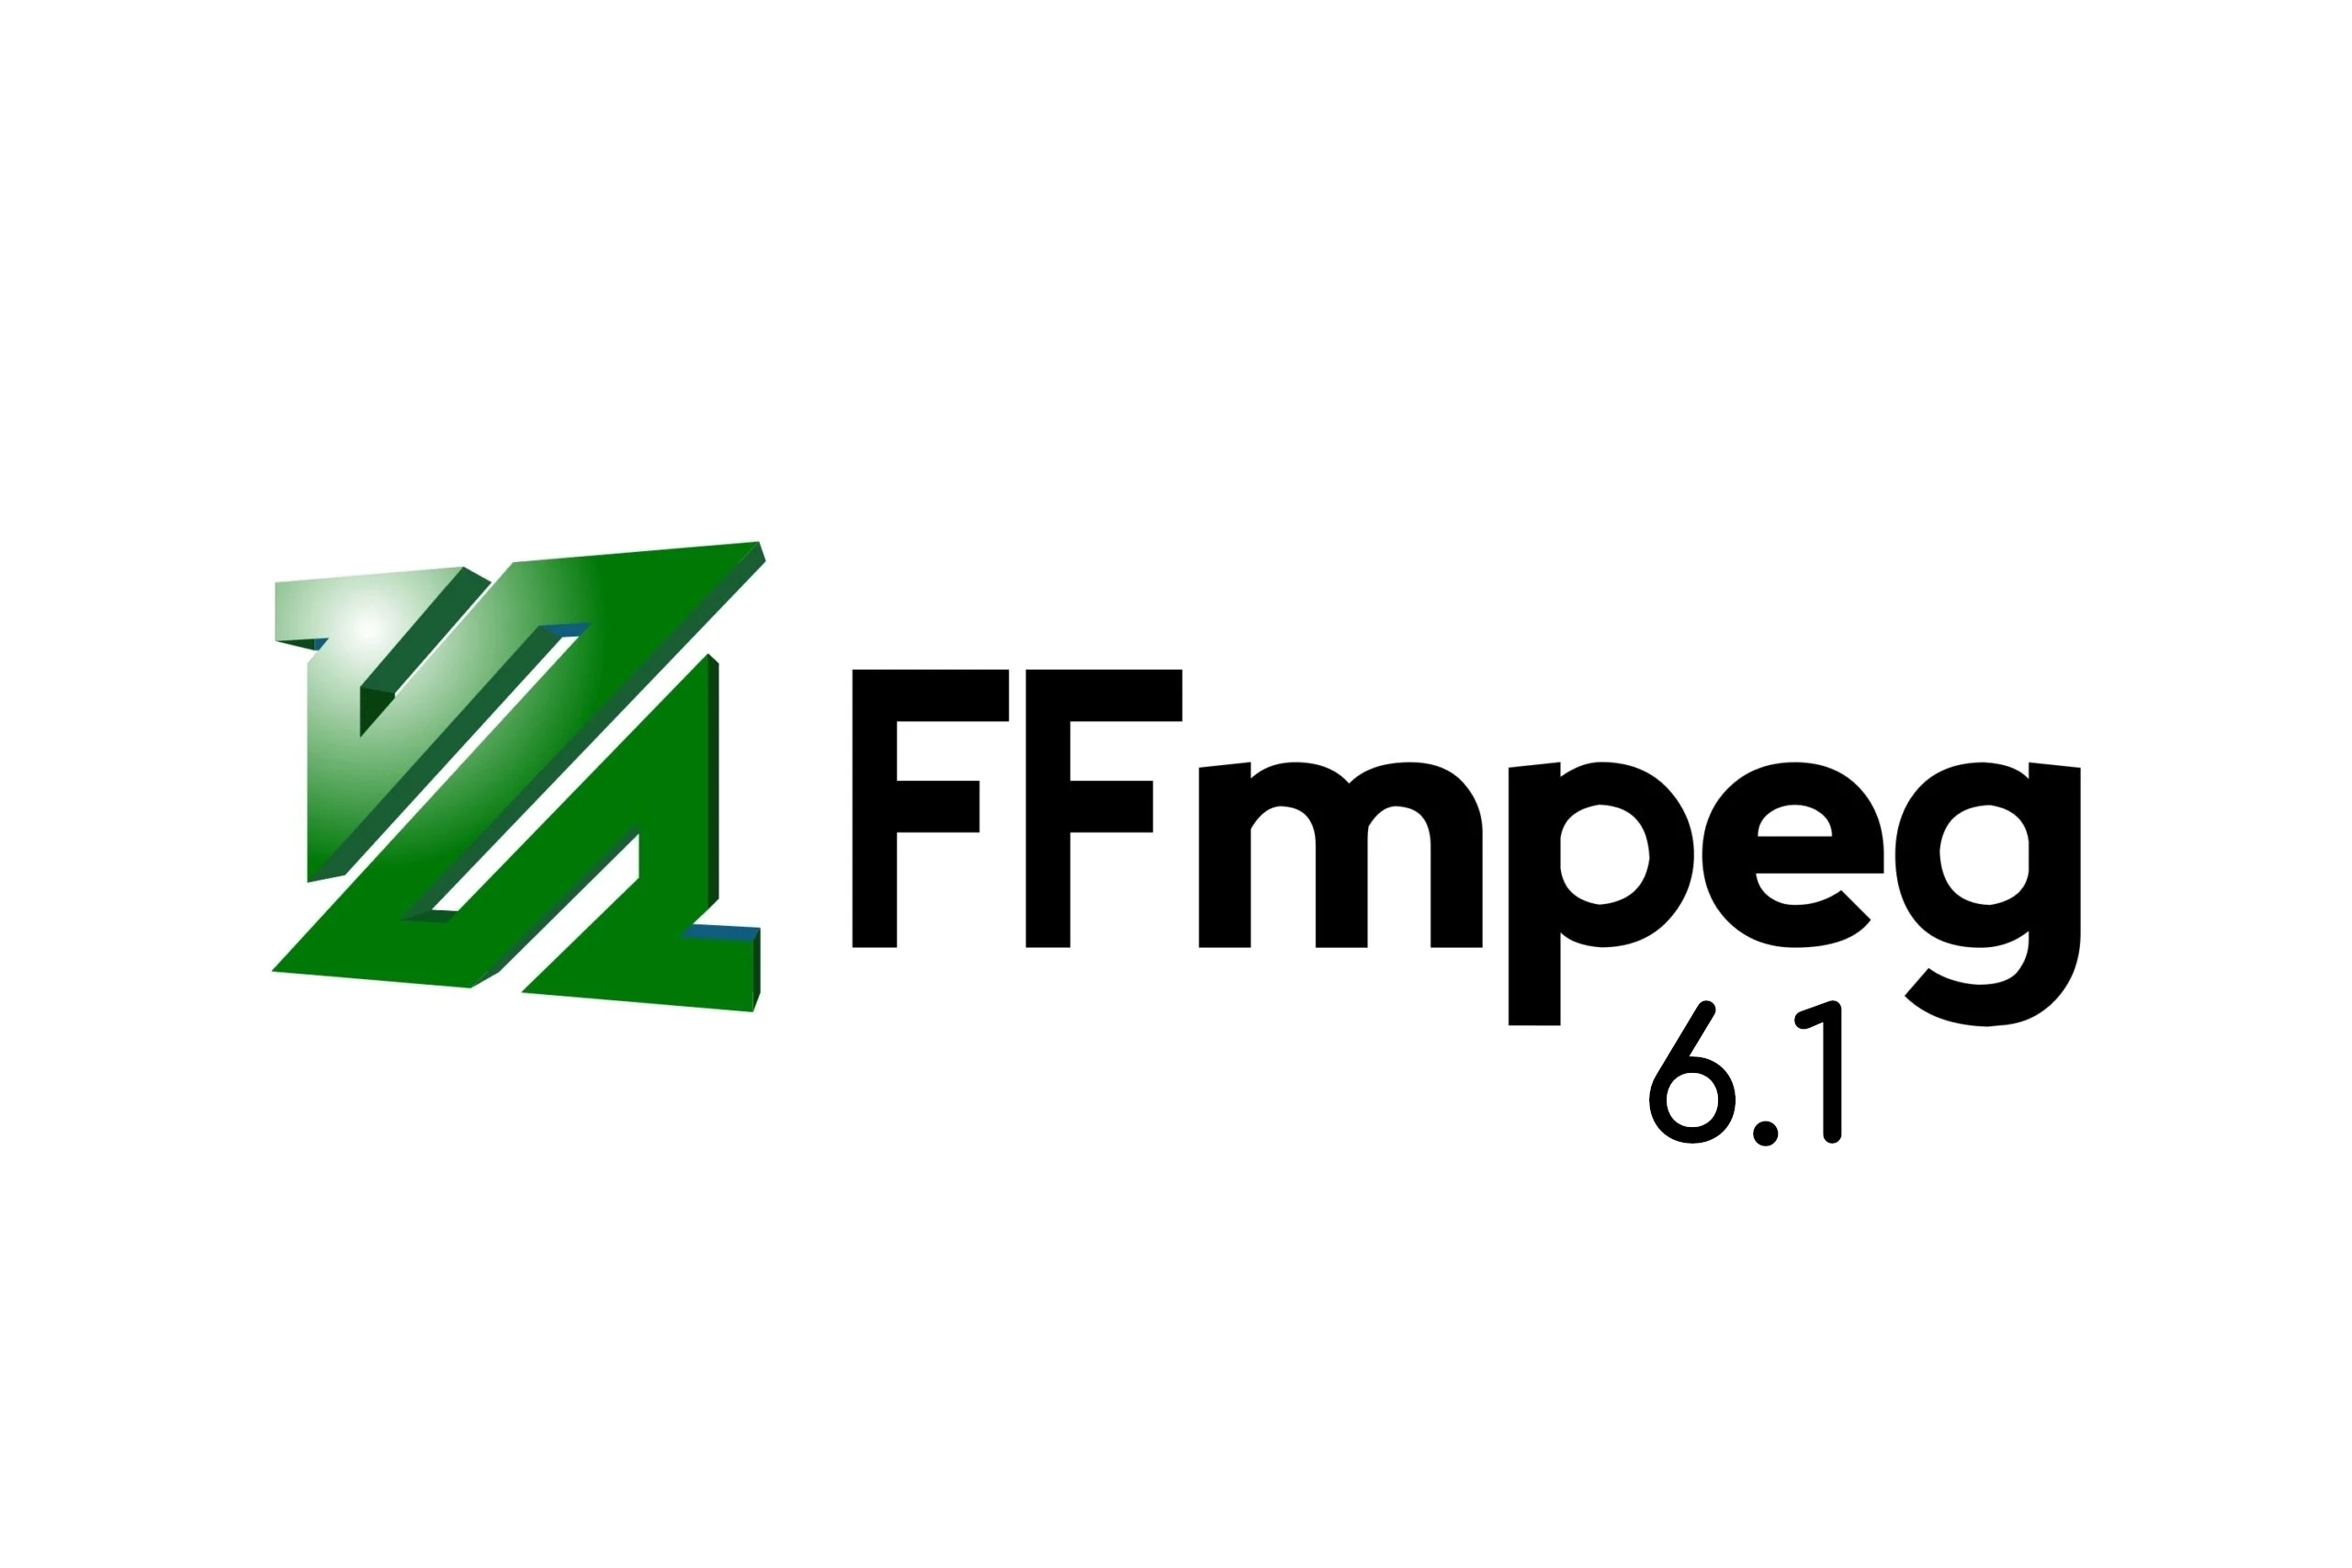 FFmpeg 6.1 “Heaviside” Released with VAAPI AV1 Encoder, HW Vulkan Decoding